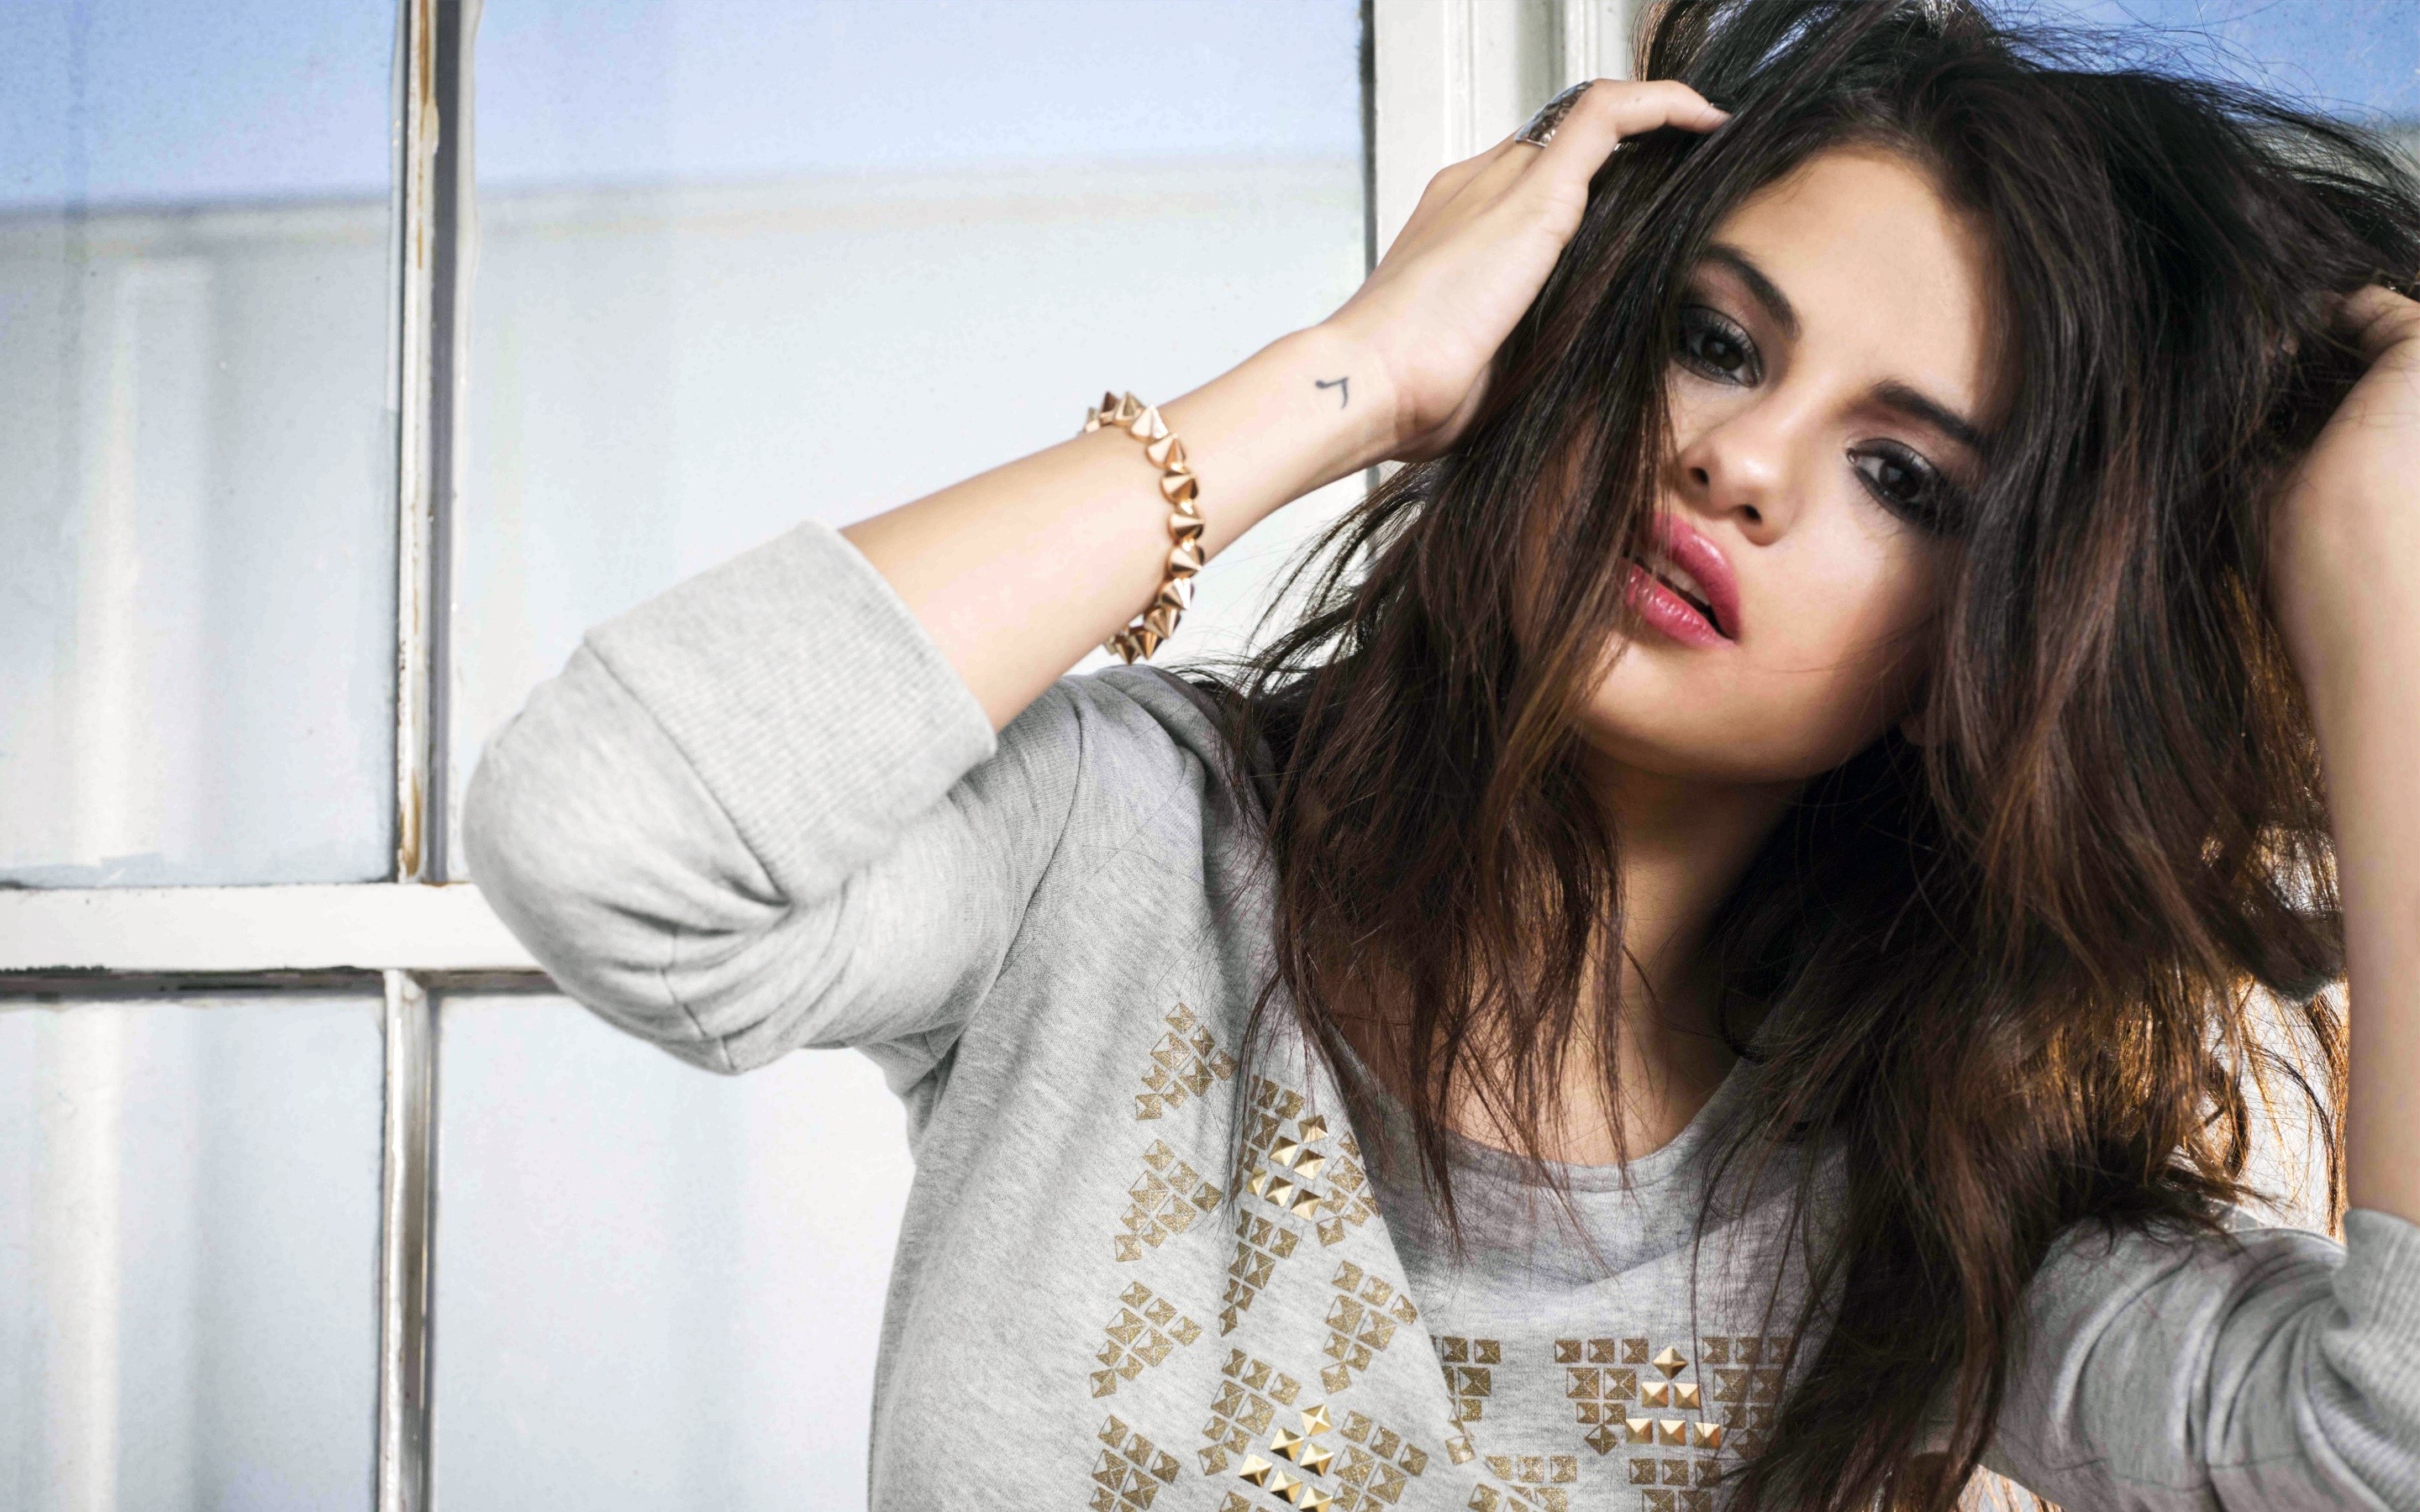 Fondos de pantalla Selena Gomez agarrandose el cabello